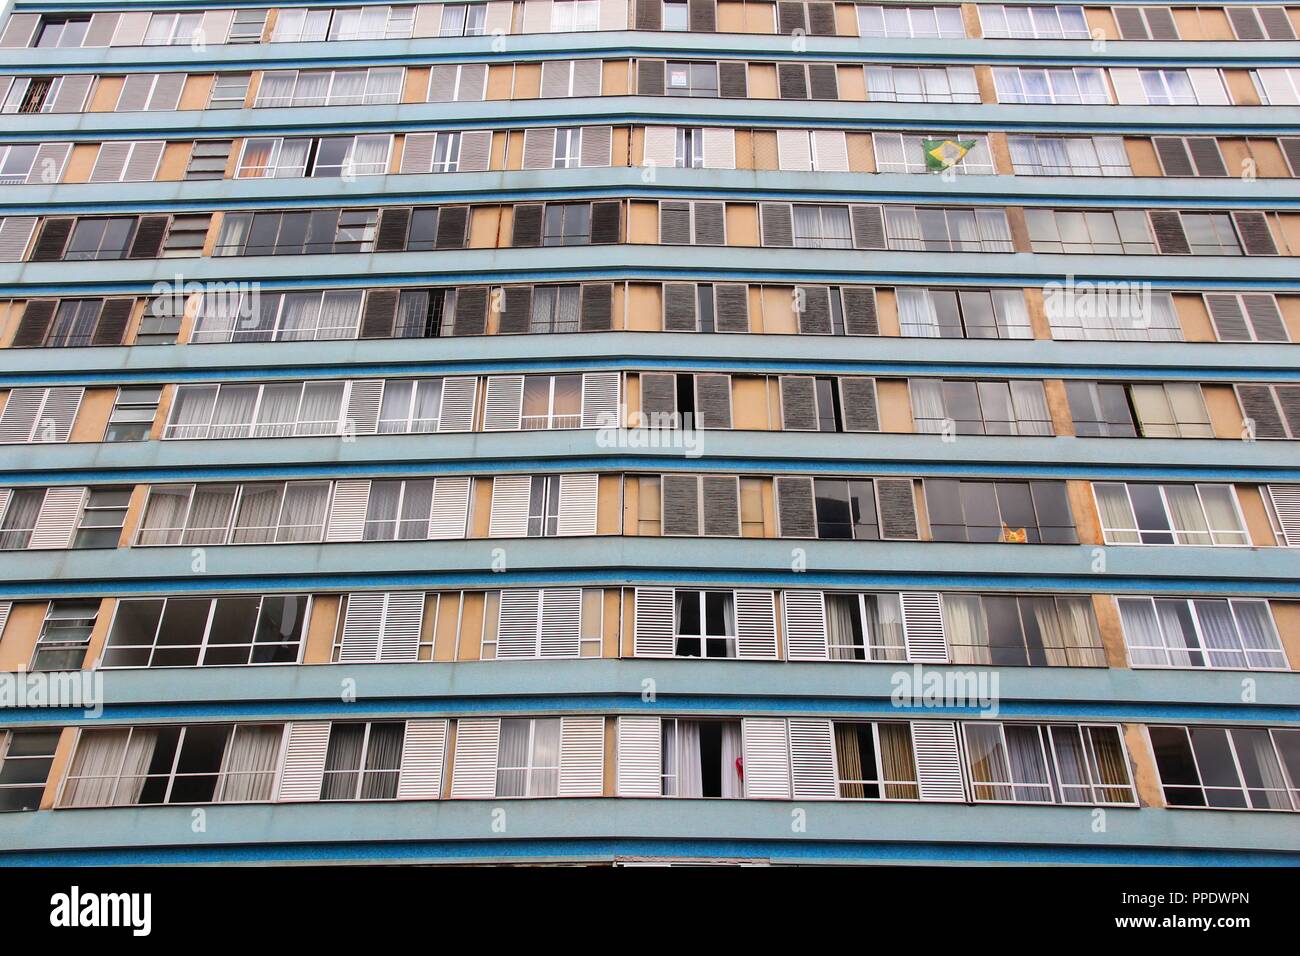 Curitiba, Brasilien - generische Eigentumswohnung. Hohes Apartmentgebäude. Stockfoto